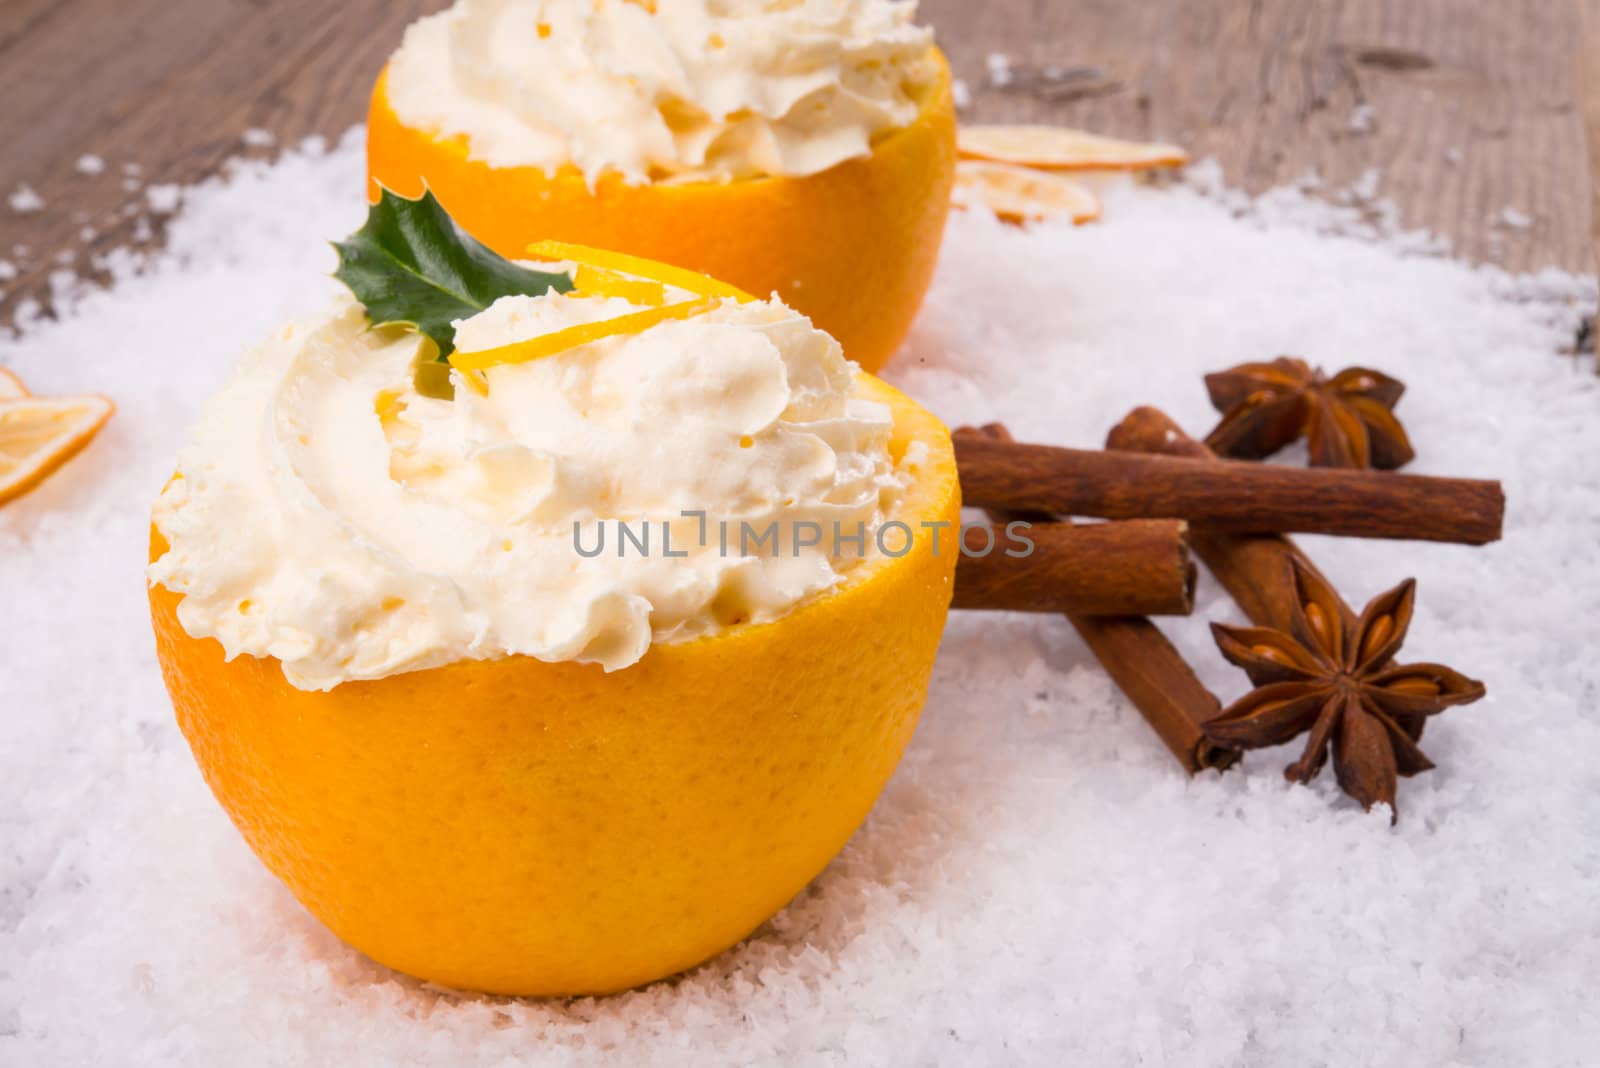 Cream - oranges - cinnamon by Darius.Dzinnik